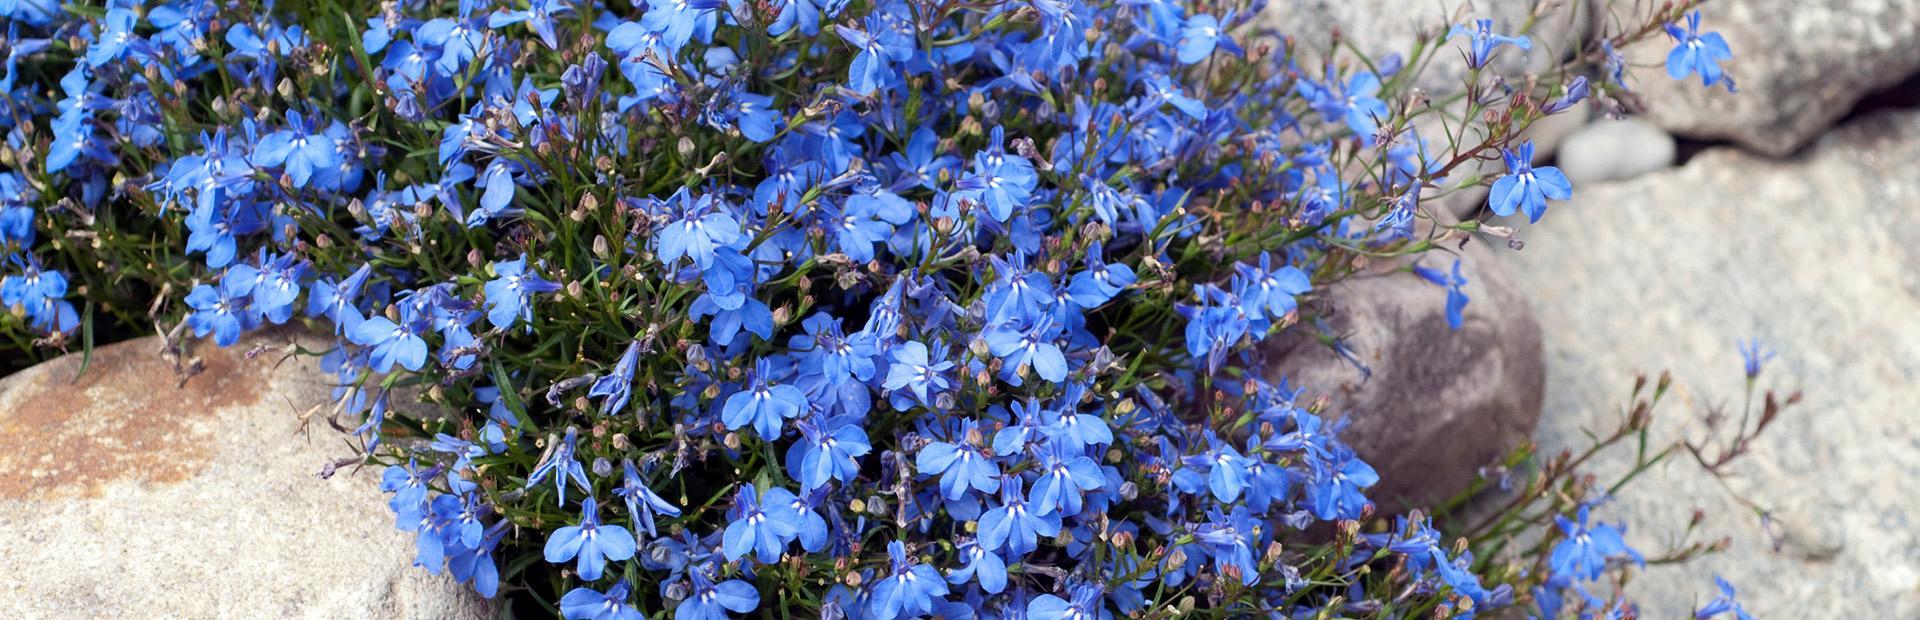 Slajd 1 - niebieskie kwiaty